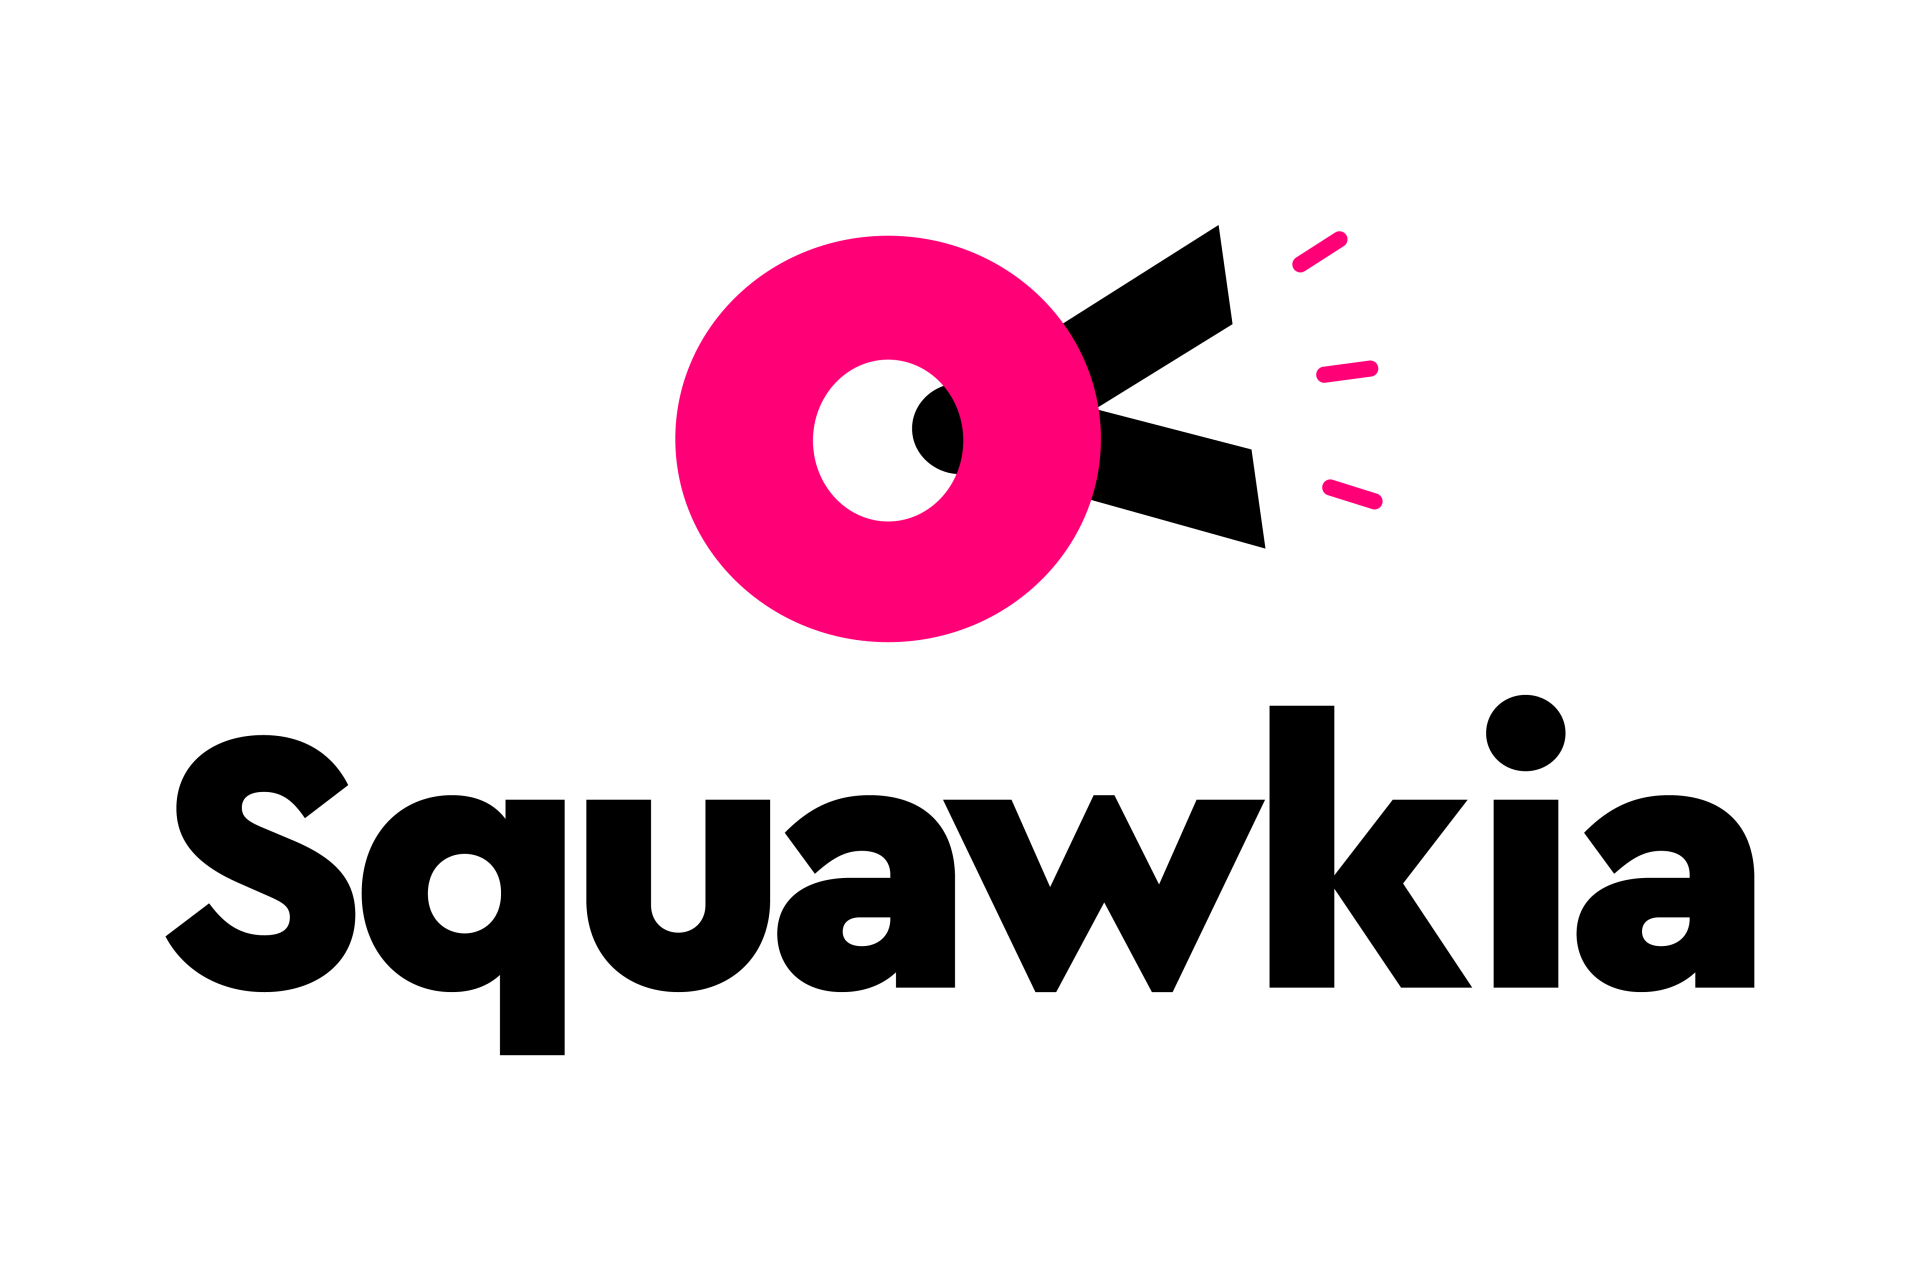 (c) Squawkia.com